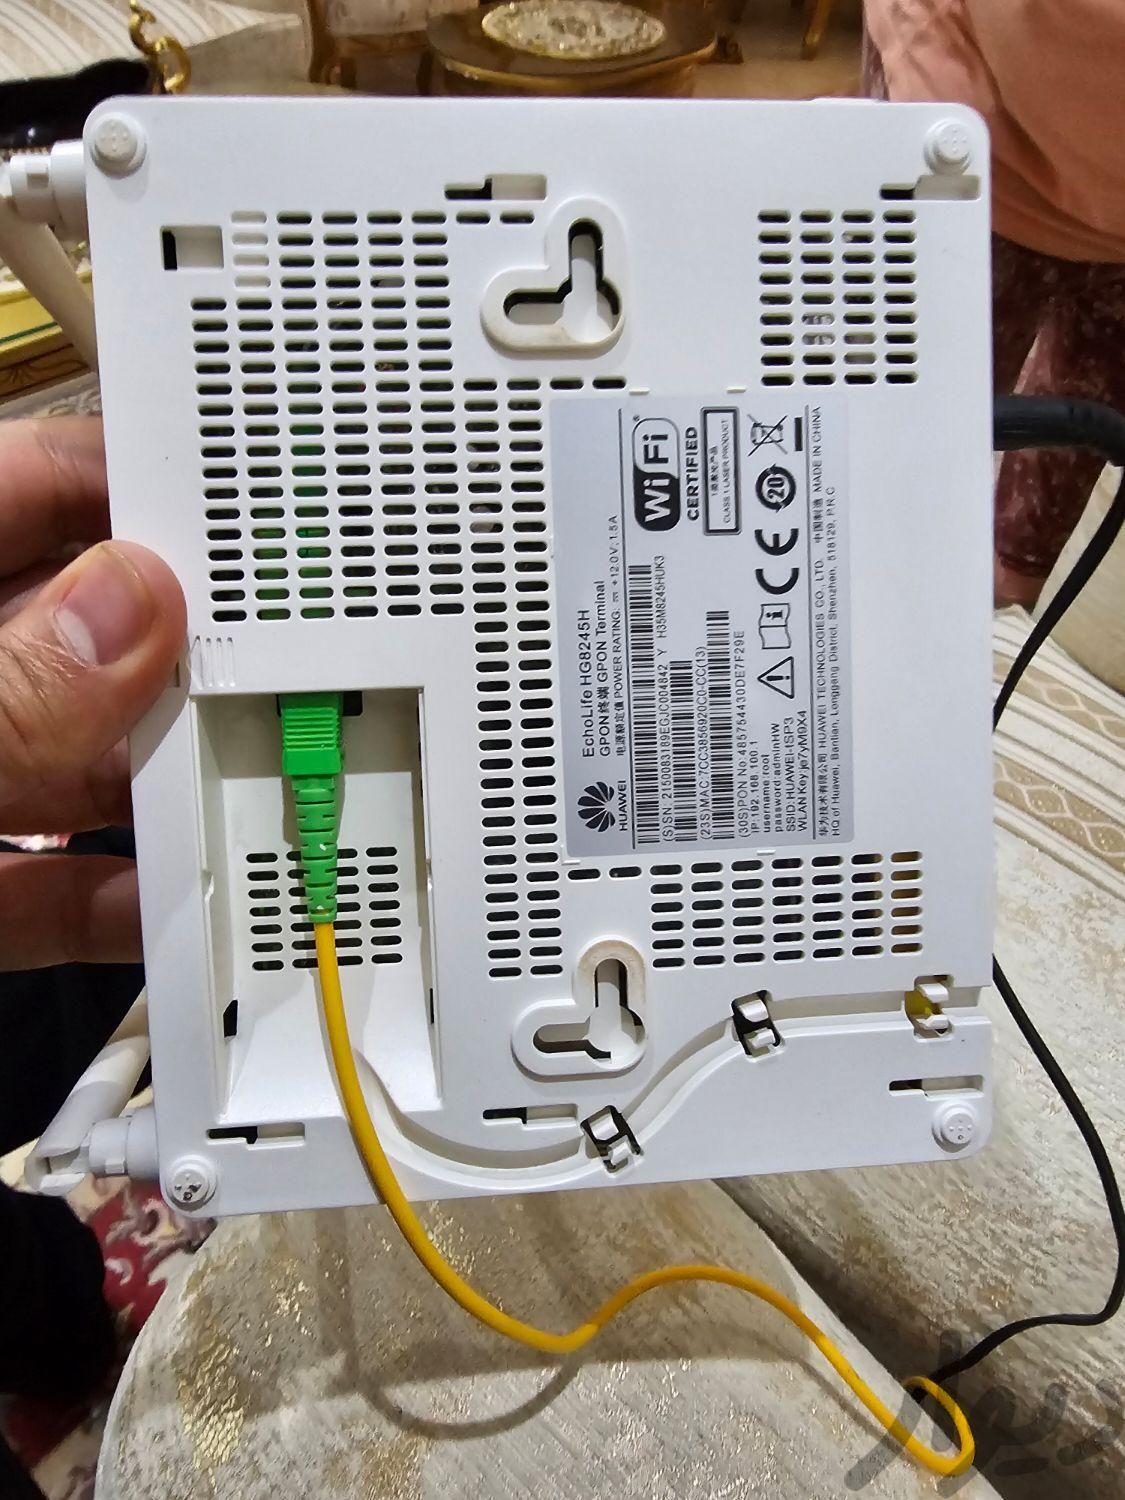 مودم ADSL هوآوی تمیز|مودم و تجهیزات شبکه رایانه|تهران, مرزداران|دیوار